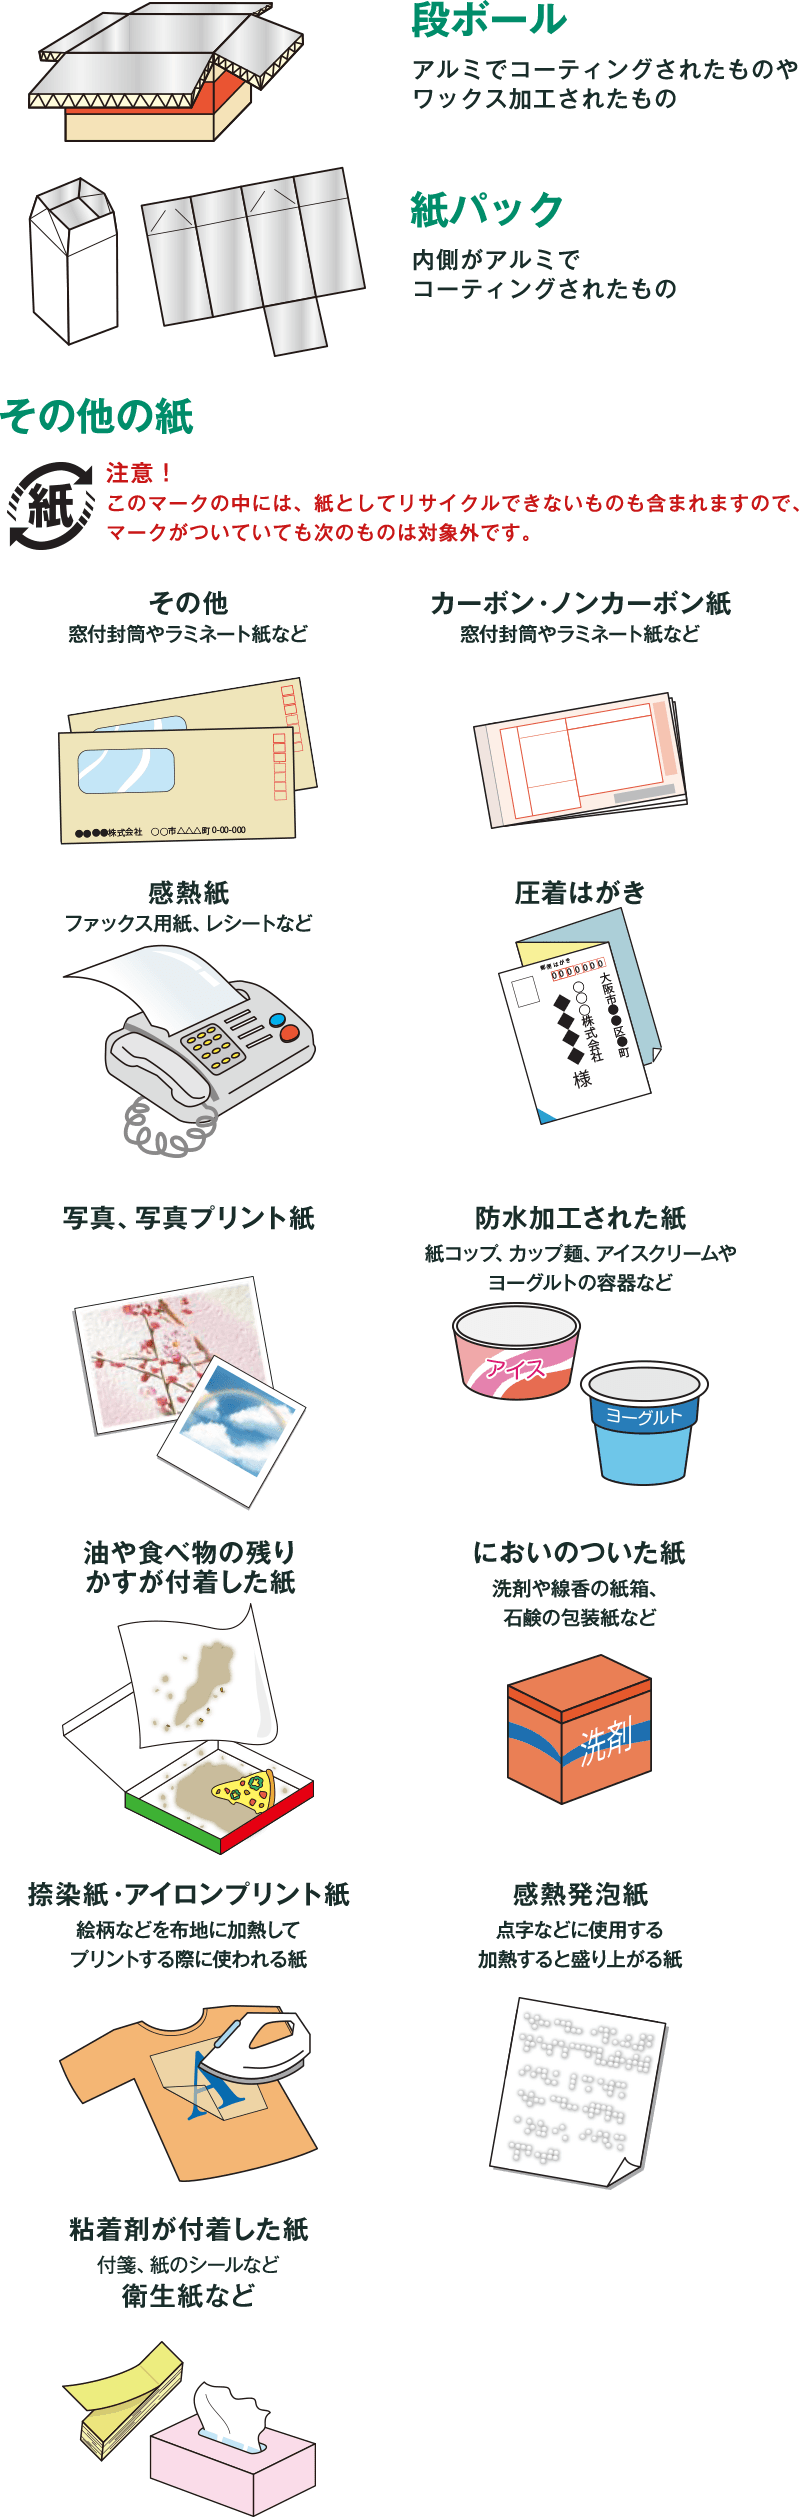 リサイクルできない紙類 のリサイクル 北大阪清掃